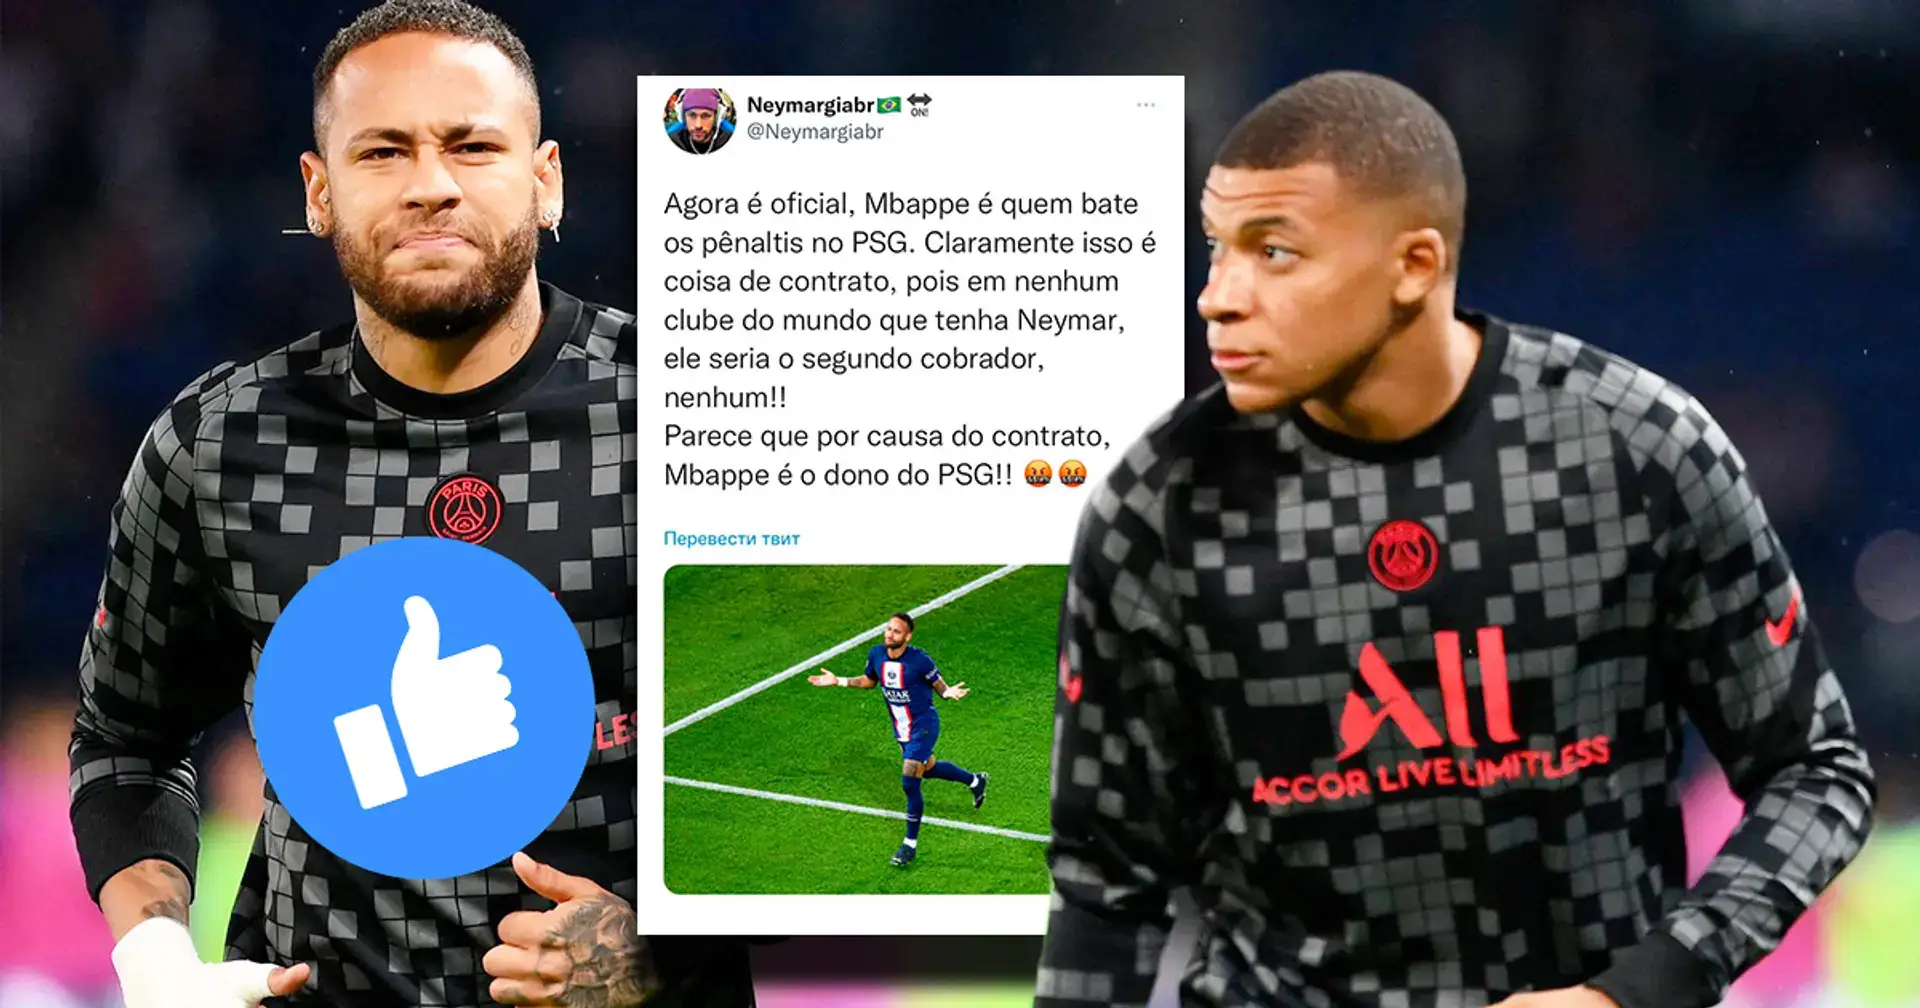 A Neymar le gusta el tuit de un fan que dice que "Mbappé es el dueño del PSG" 